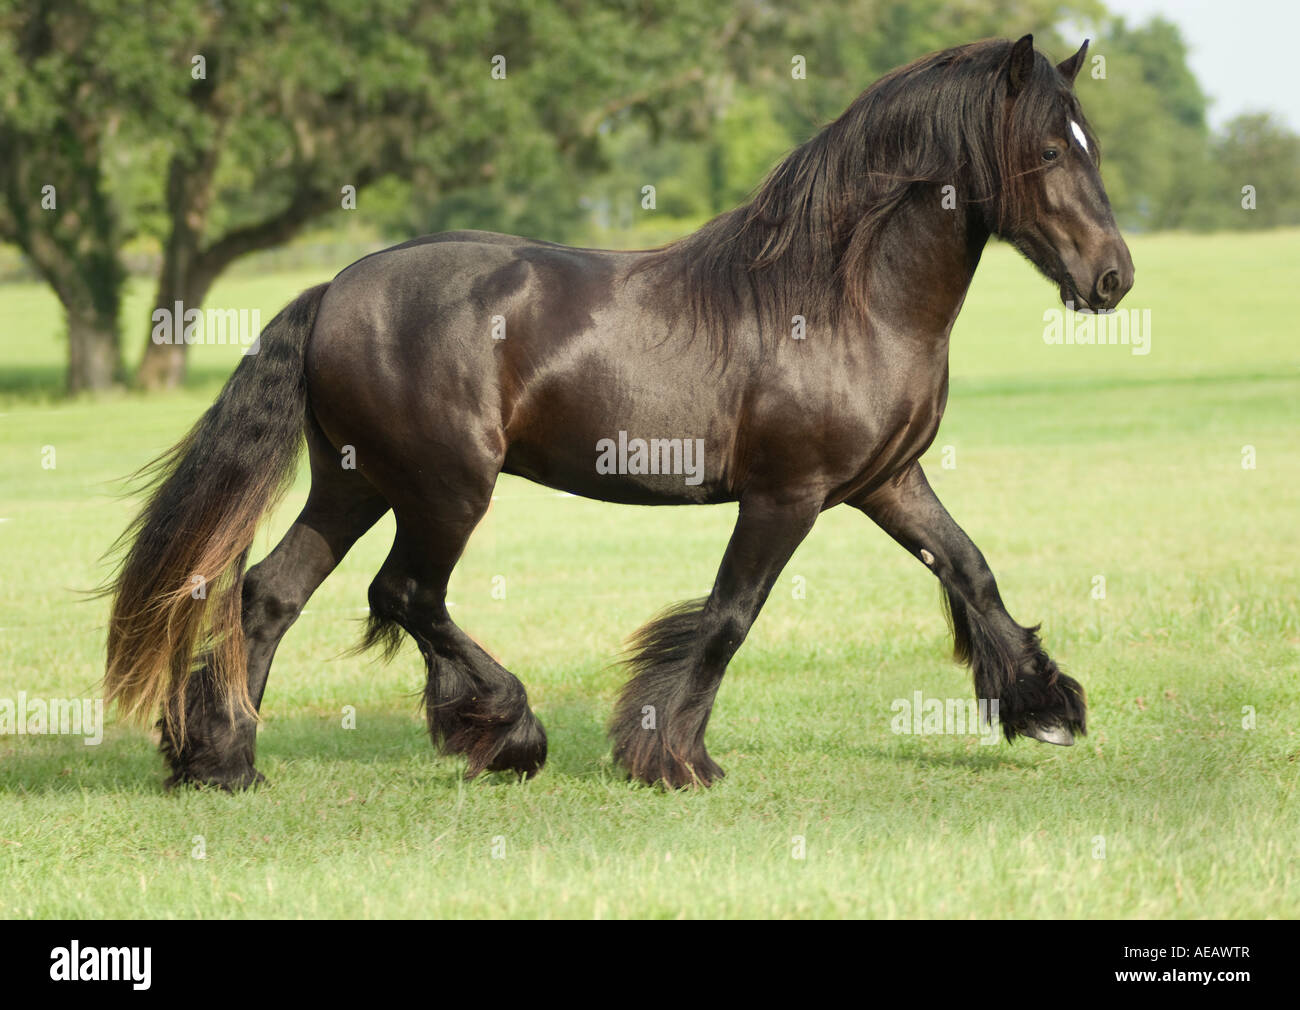 Gypsy Vanner Horse stallion runs Stock Photo